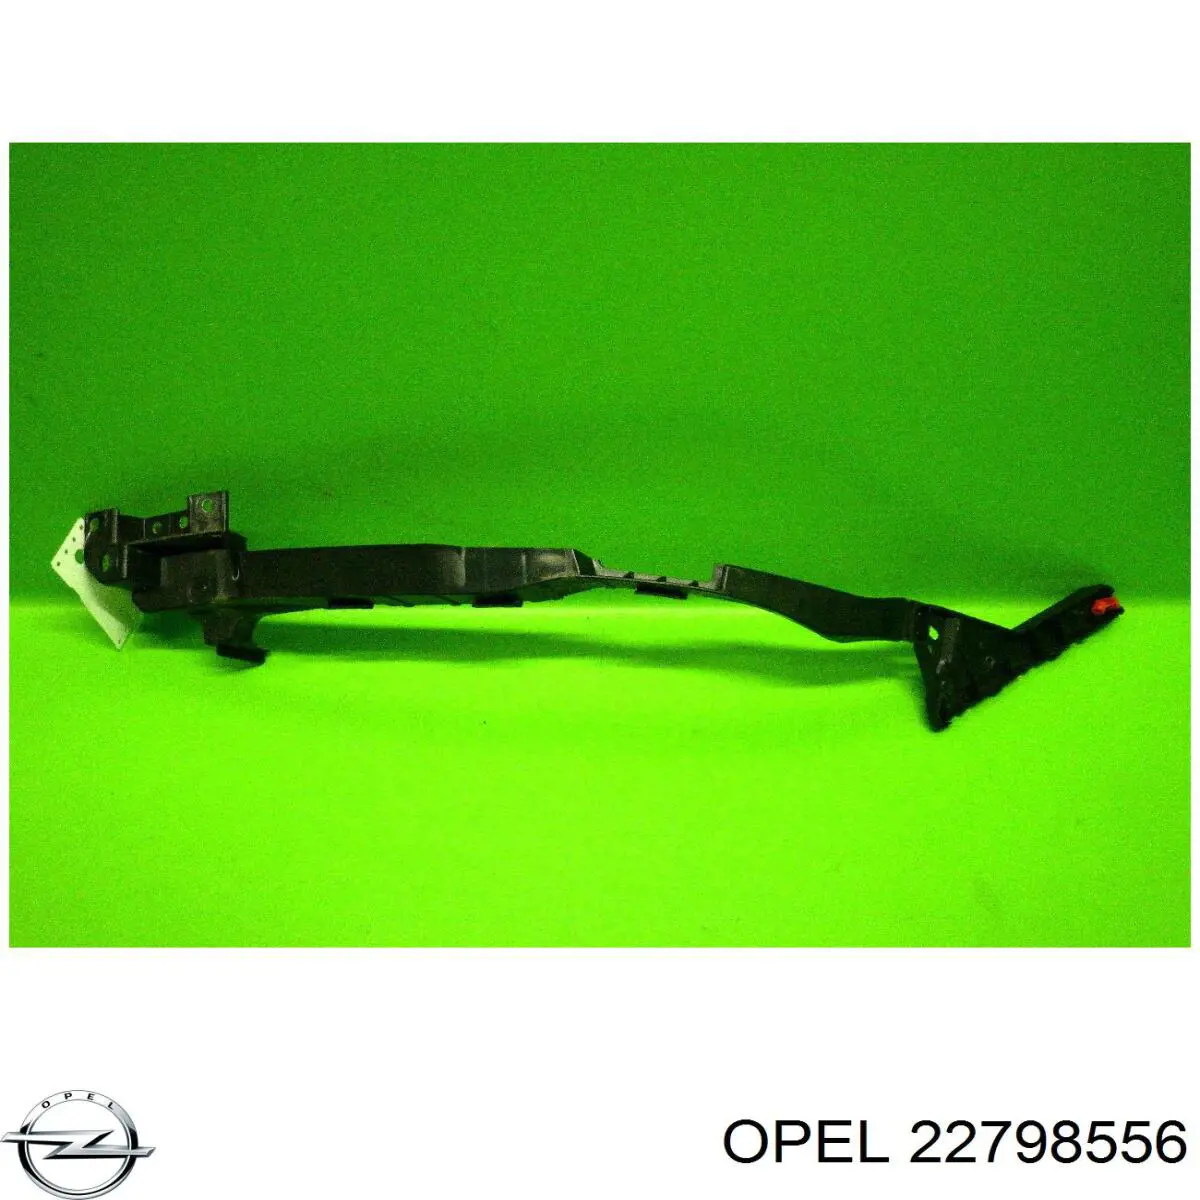 1406593 Opel направляющая переднего бампера правая